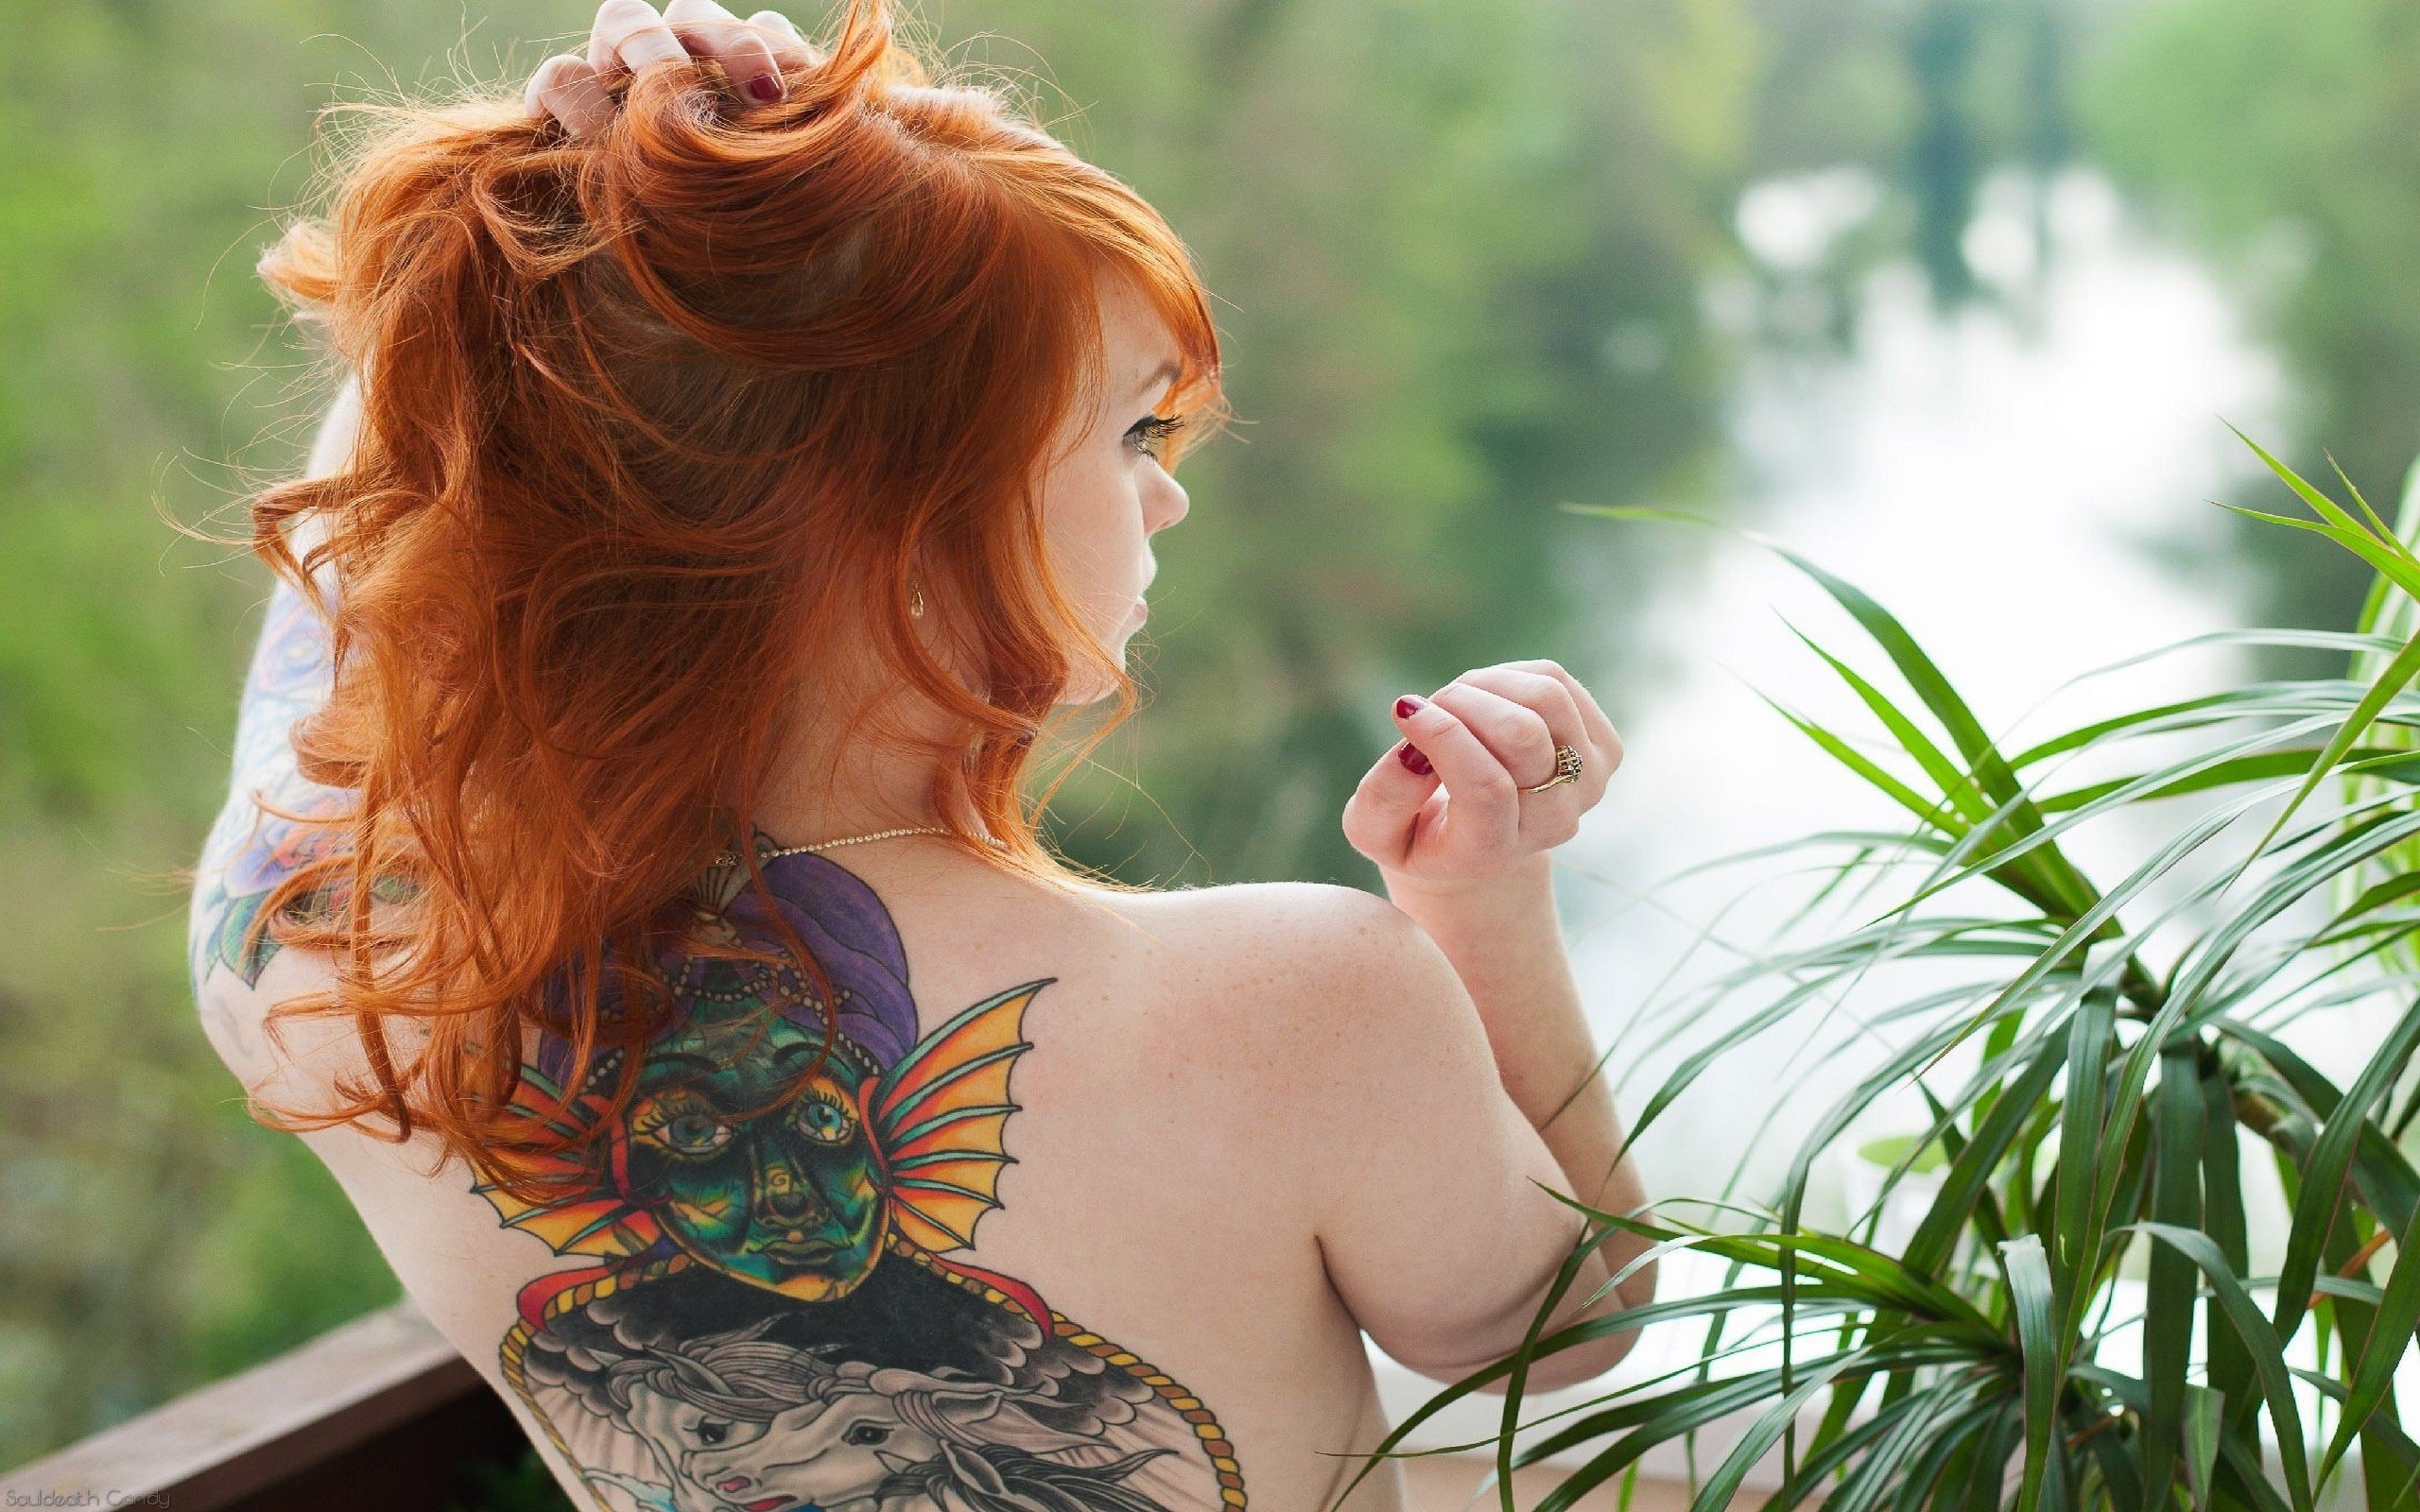 Фотограф снимает большие дойки милфы с рыжими волосами в душе для эротического журнала